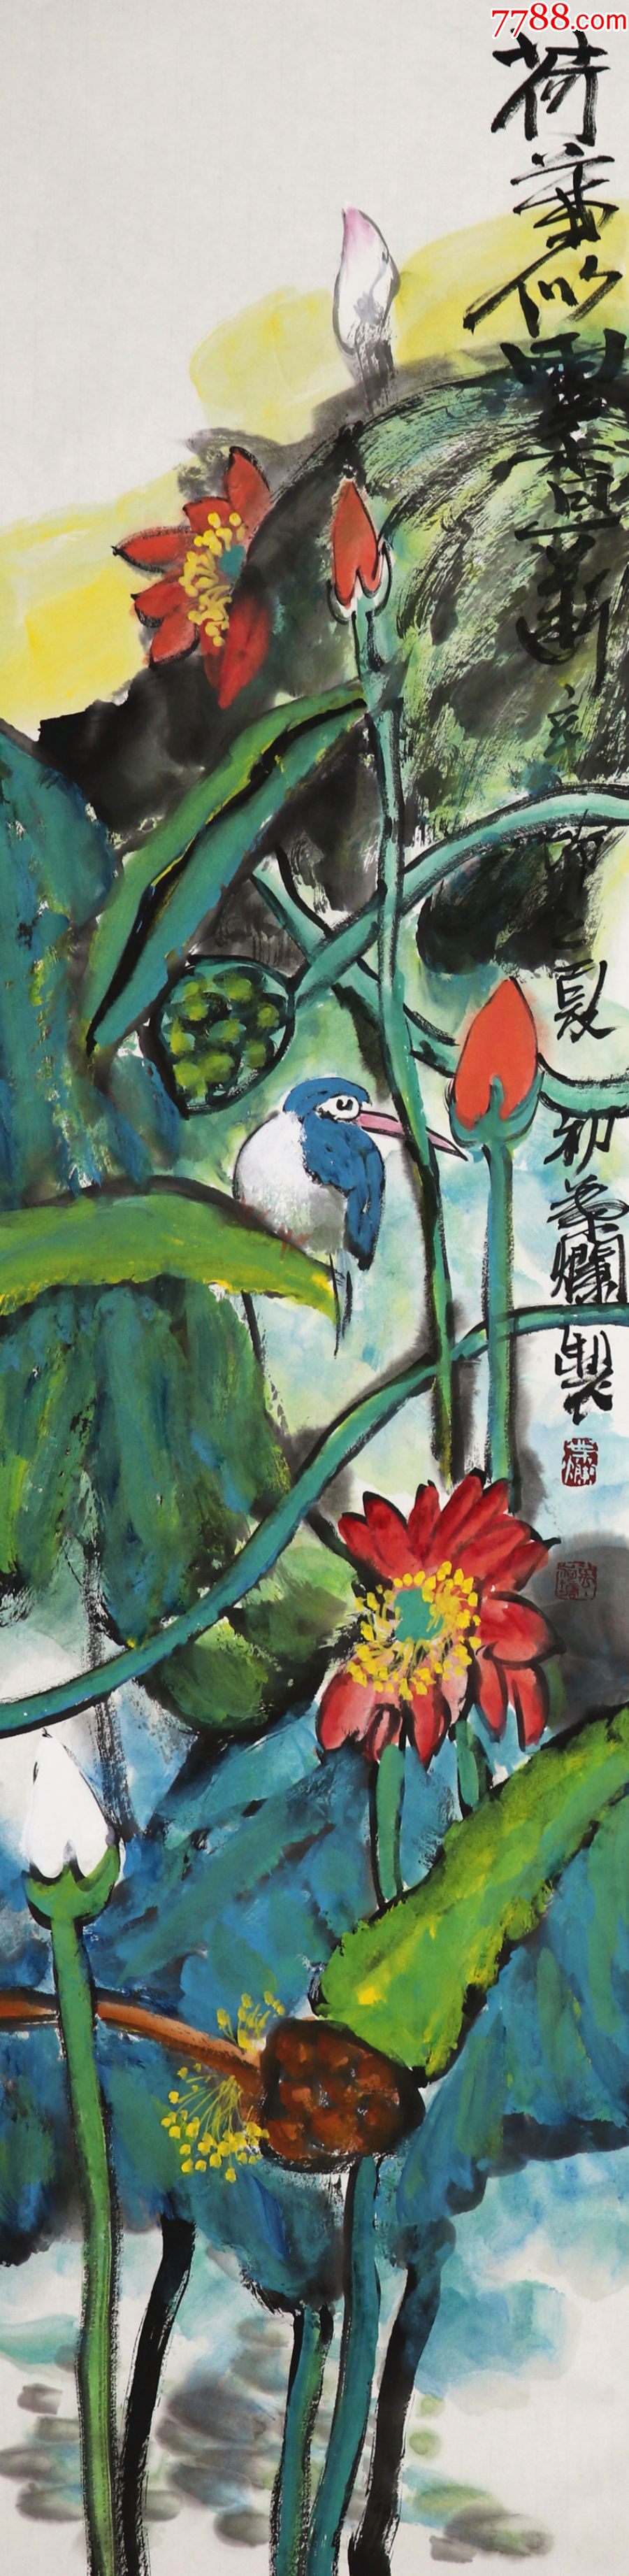 【叶烂】国家一级美术师,现为江苏省国画院专职画家,花鸟四条屏